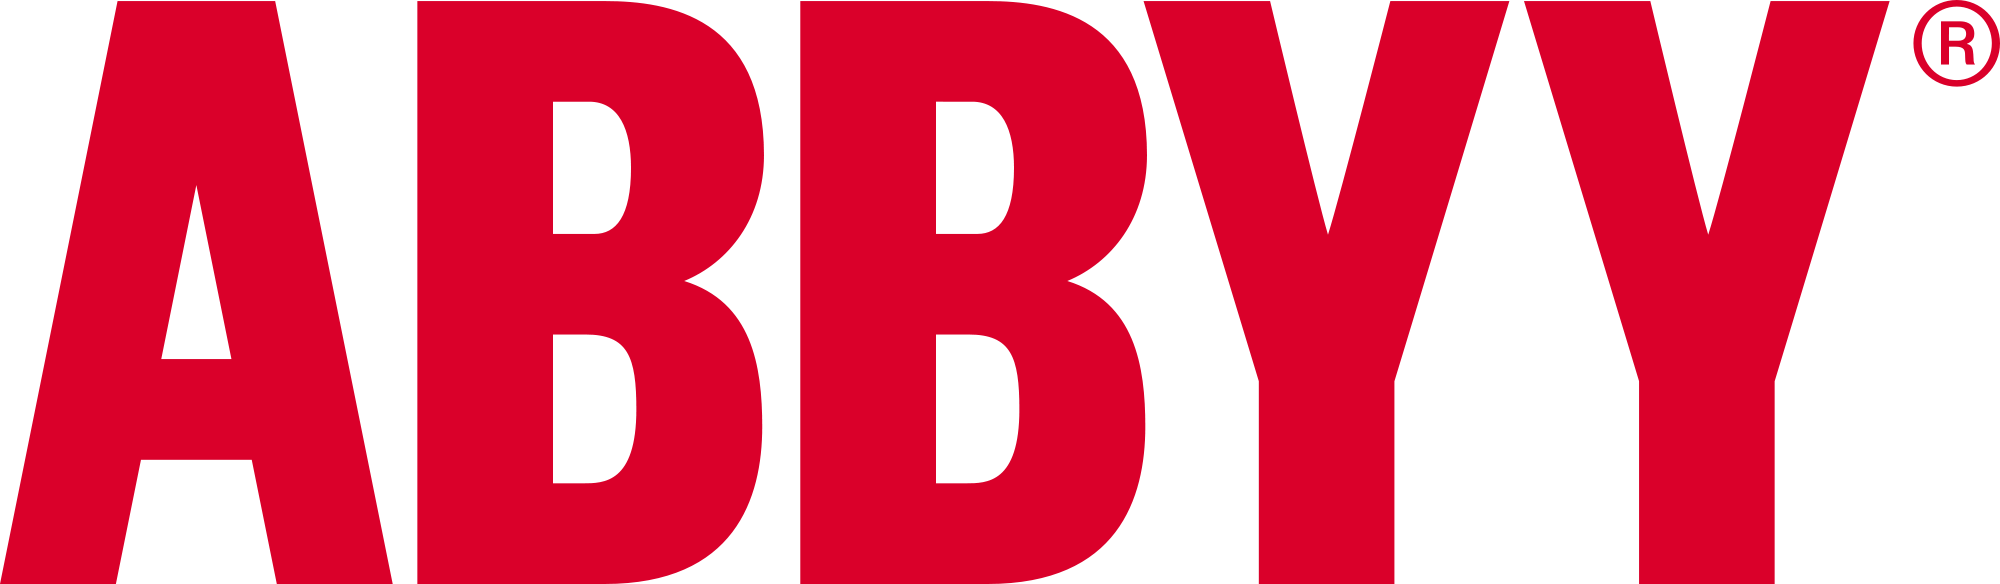 ABBYY introduit de nouvelles fonctionnalités à sa plateforme Timeline pour aider les entreprises à atteindre leurs objectifs opérationnels